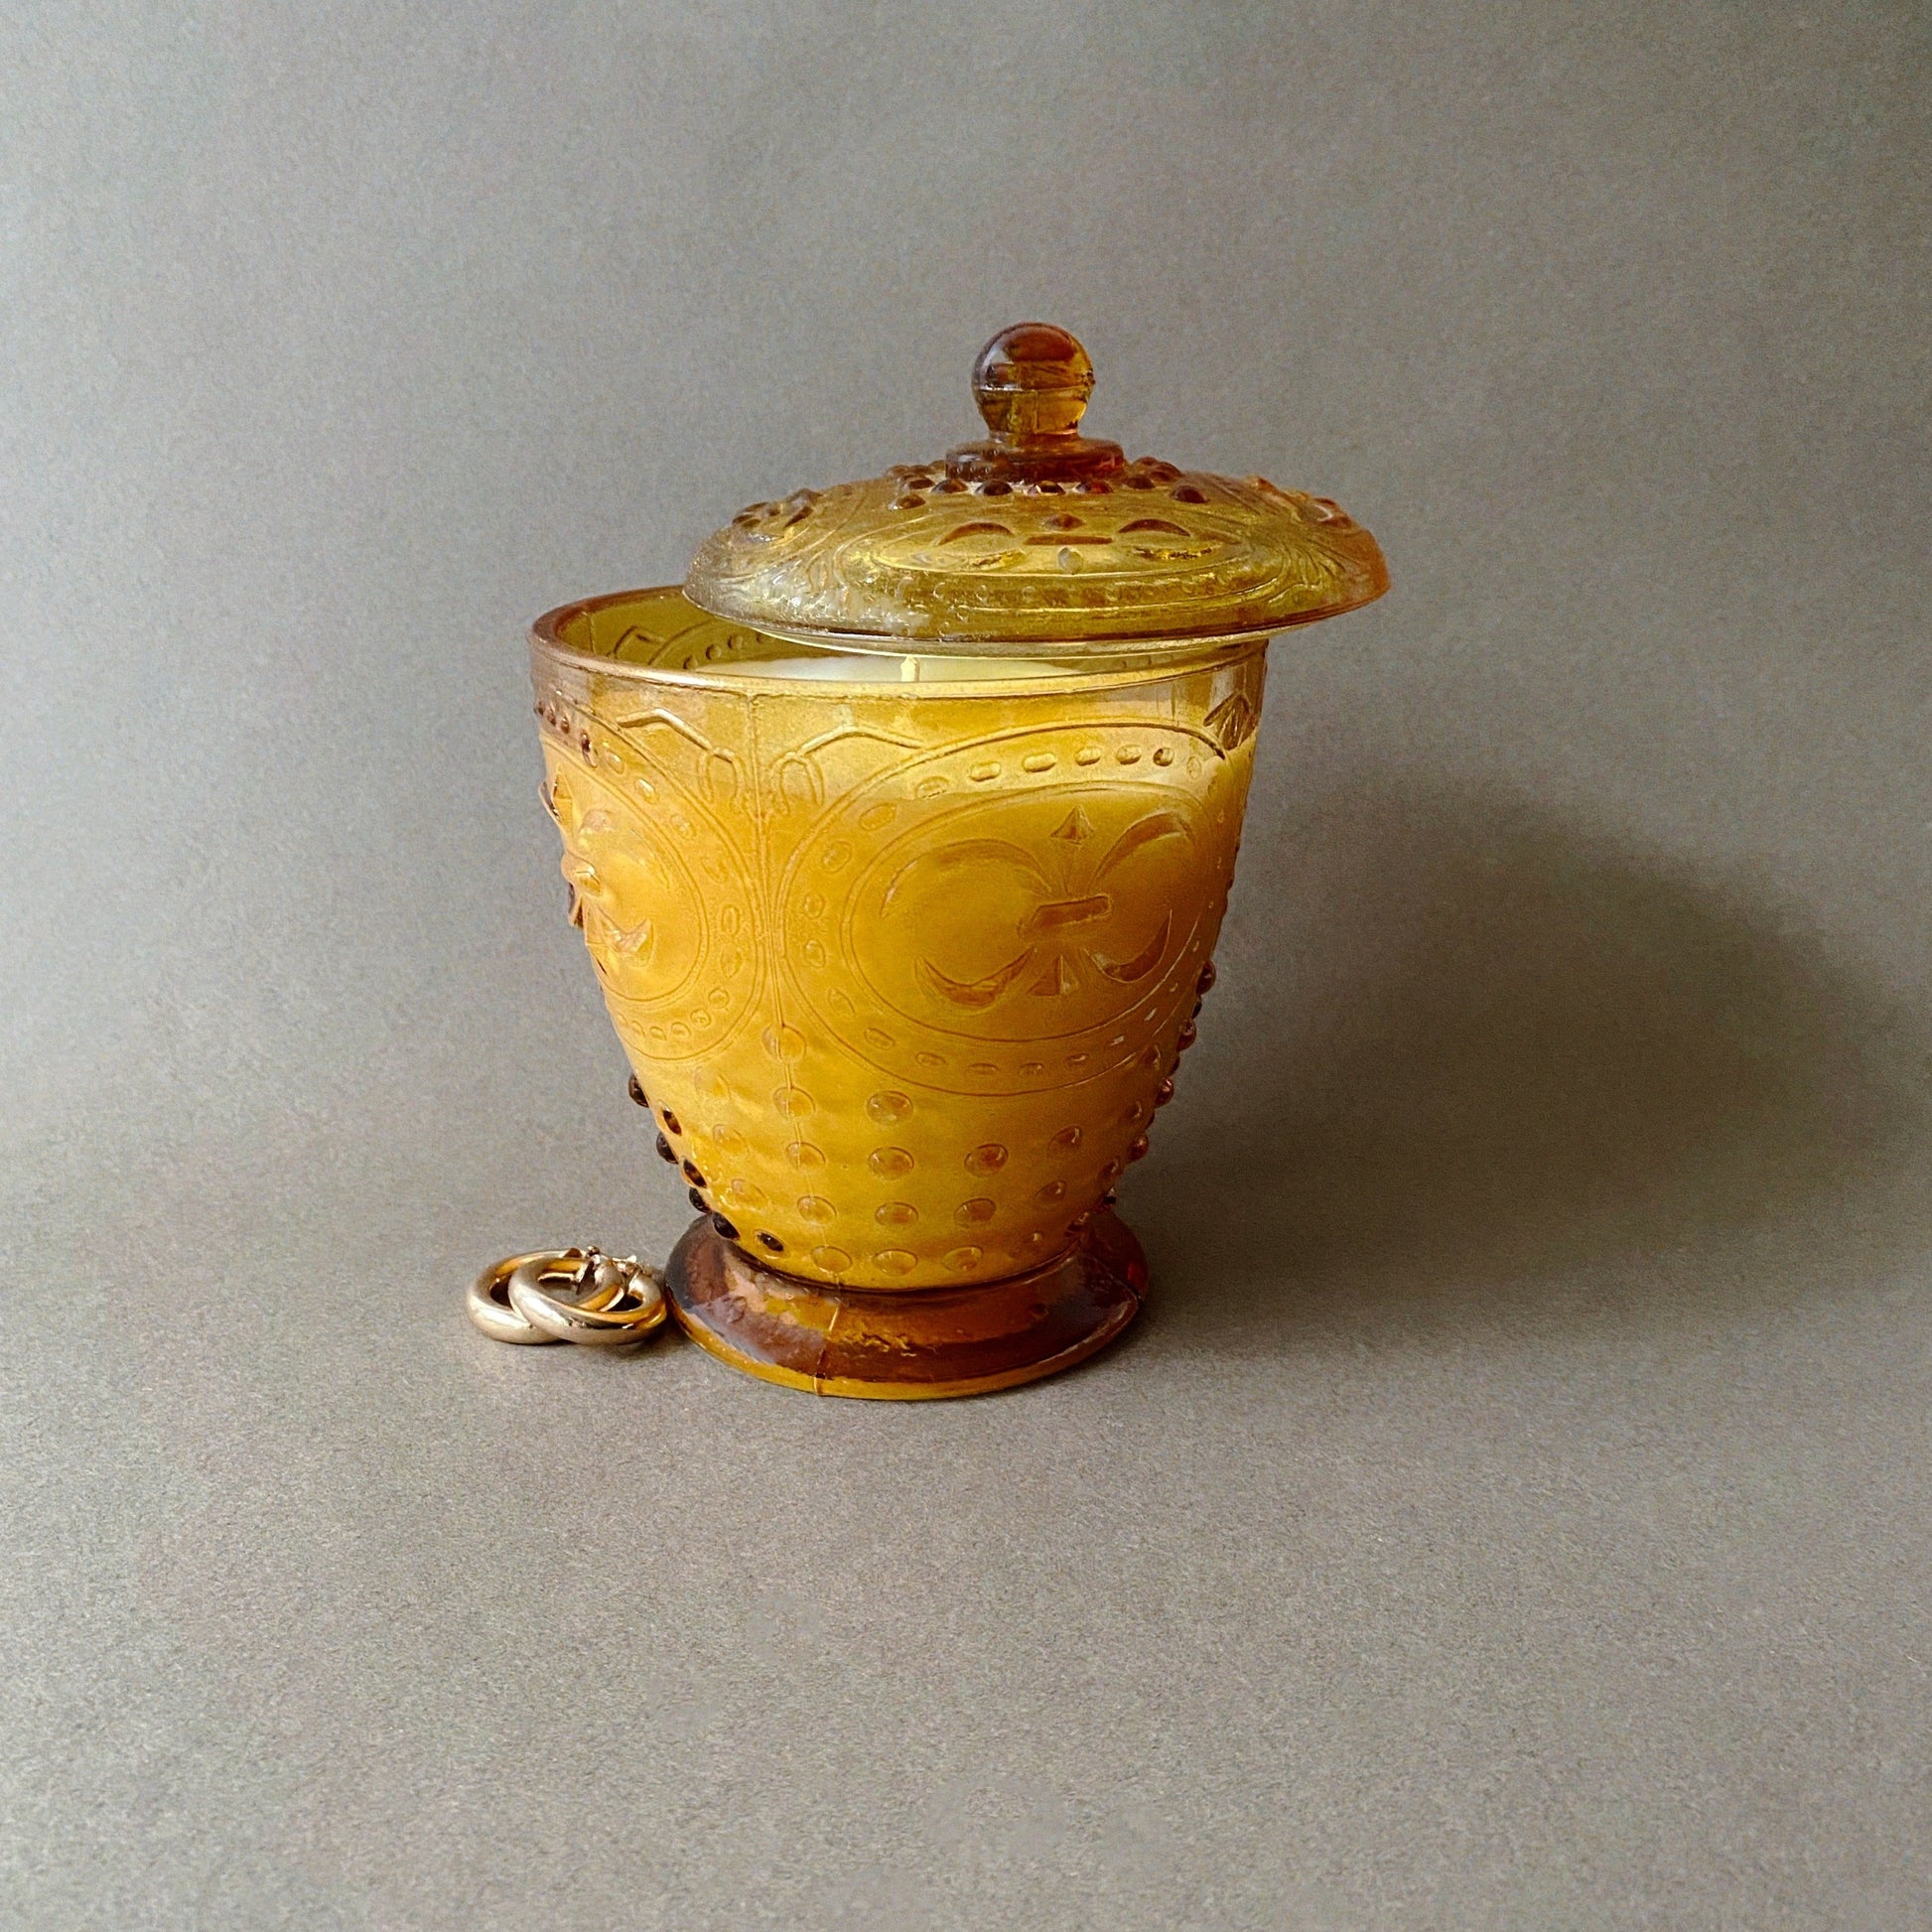 Ensō Paris - bougie upcyclée et parfumée, coulée dans un objet chiné.